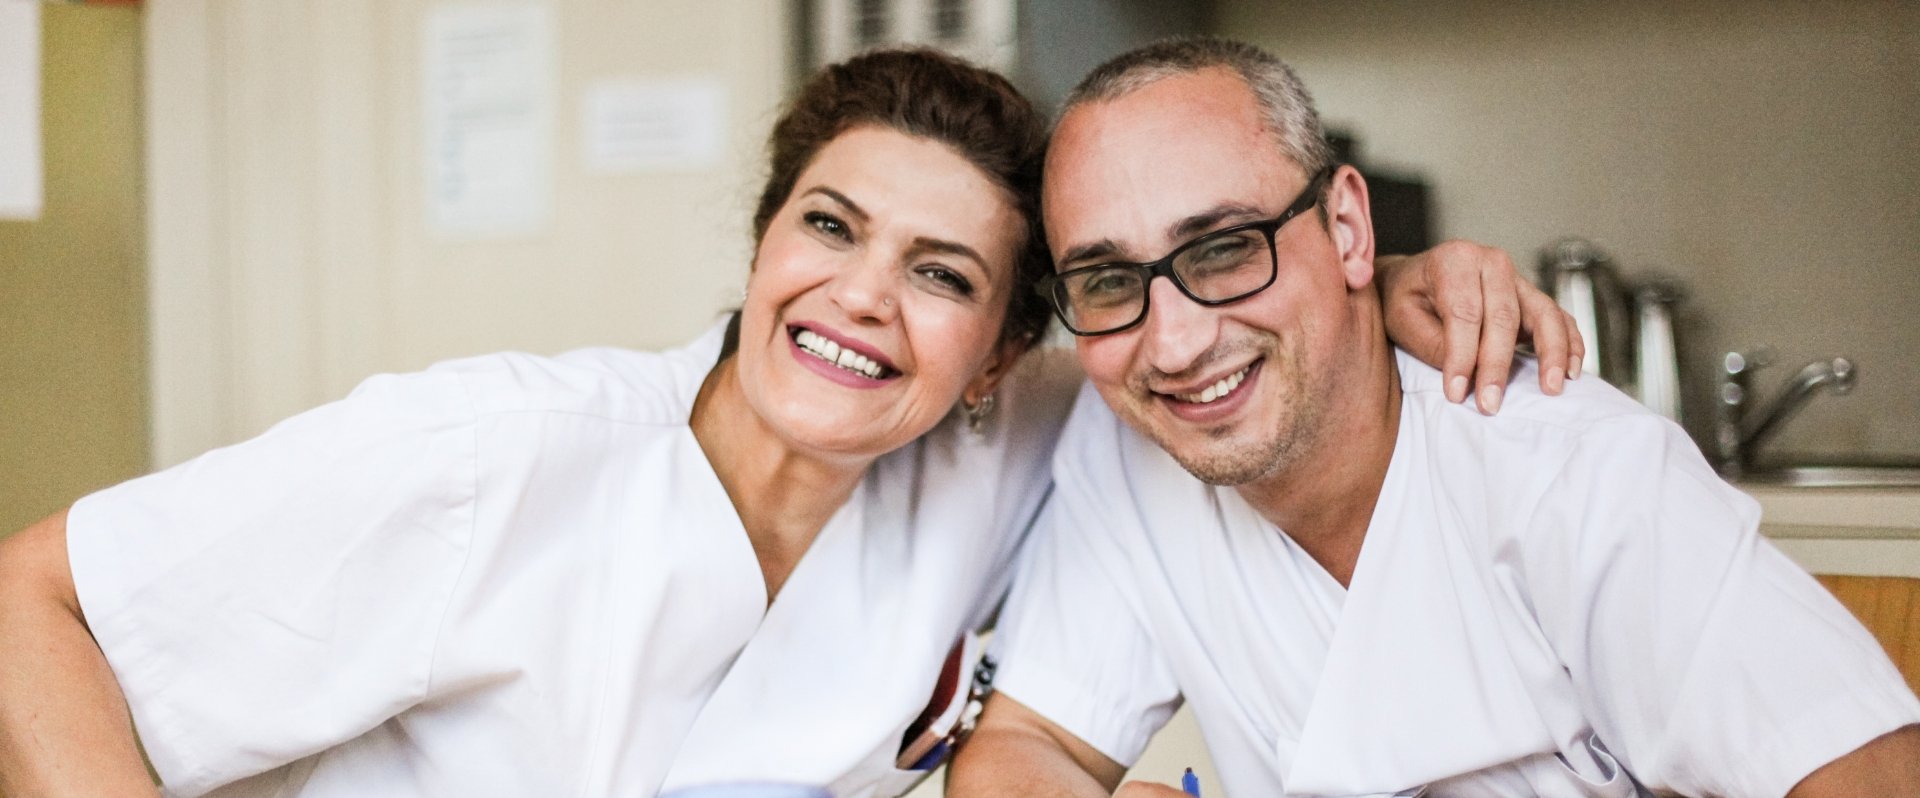 Zwei glückliche medizinische Angestellte liegen sich im Arm